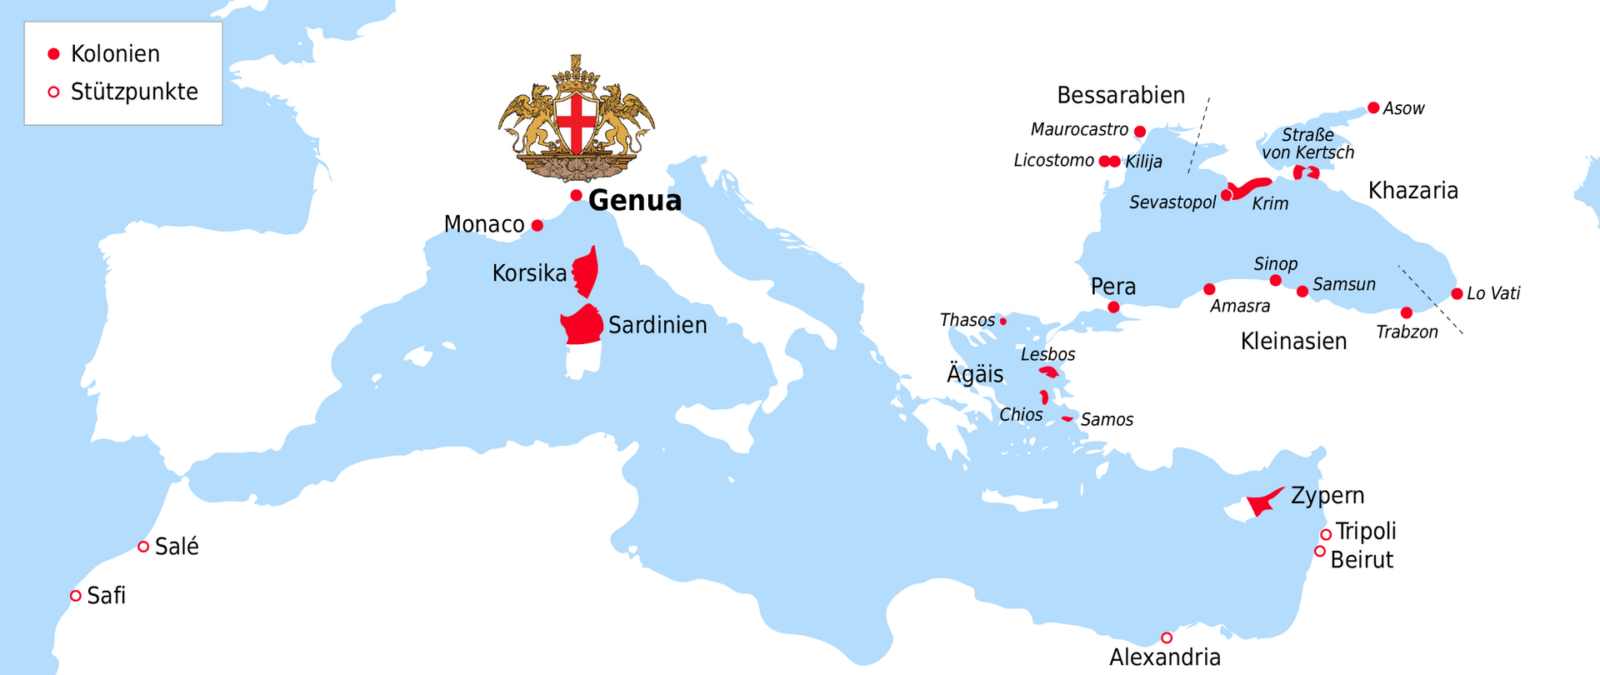 Колонии и опорные пункты Генуи на Черноморском побережье